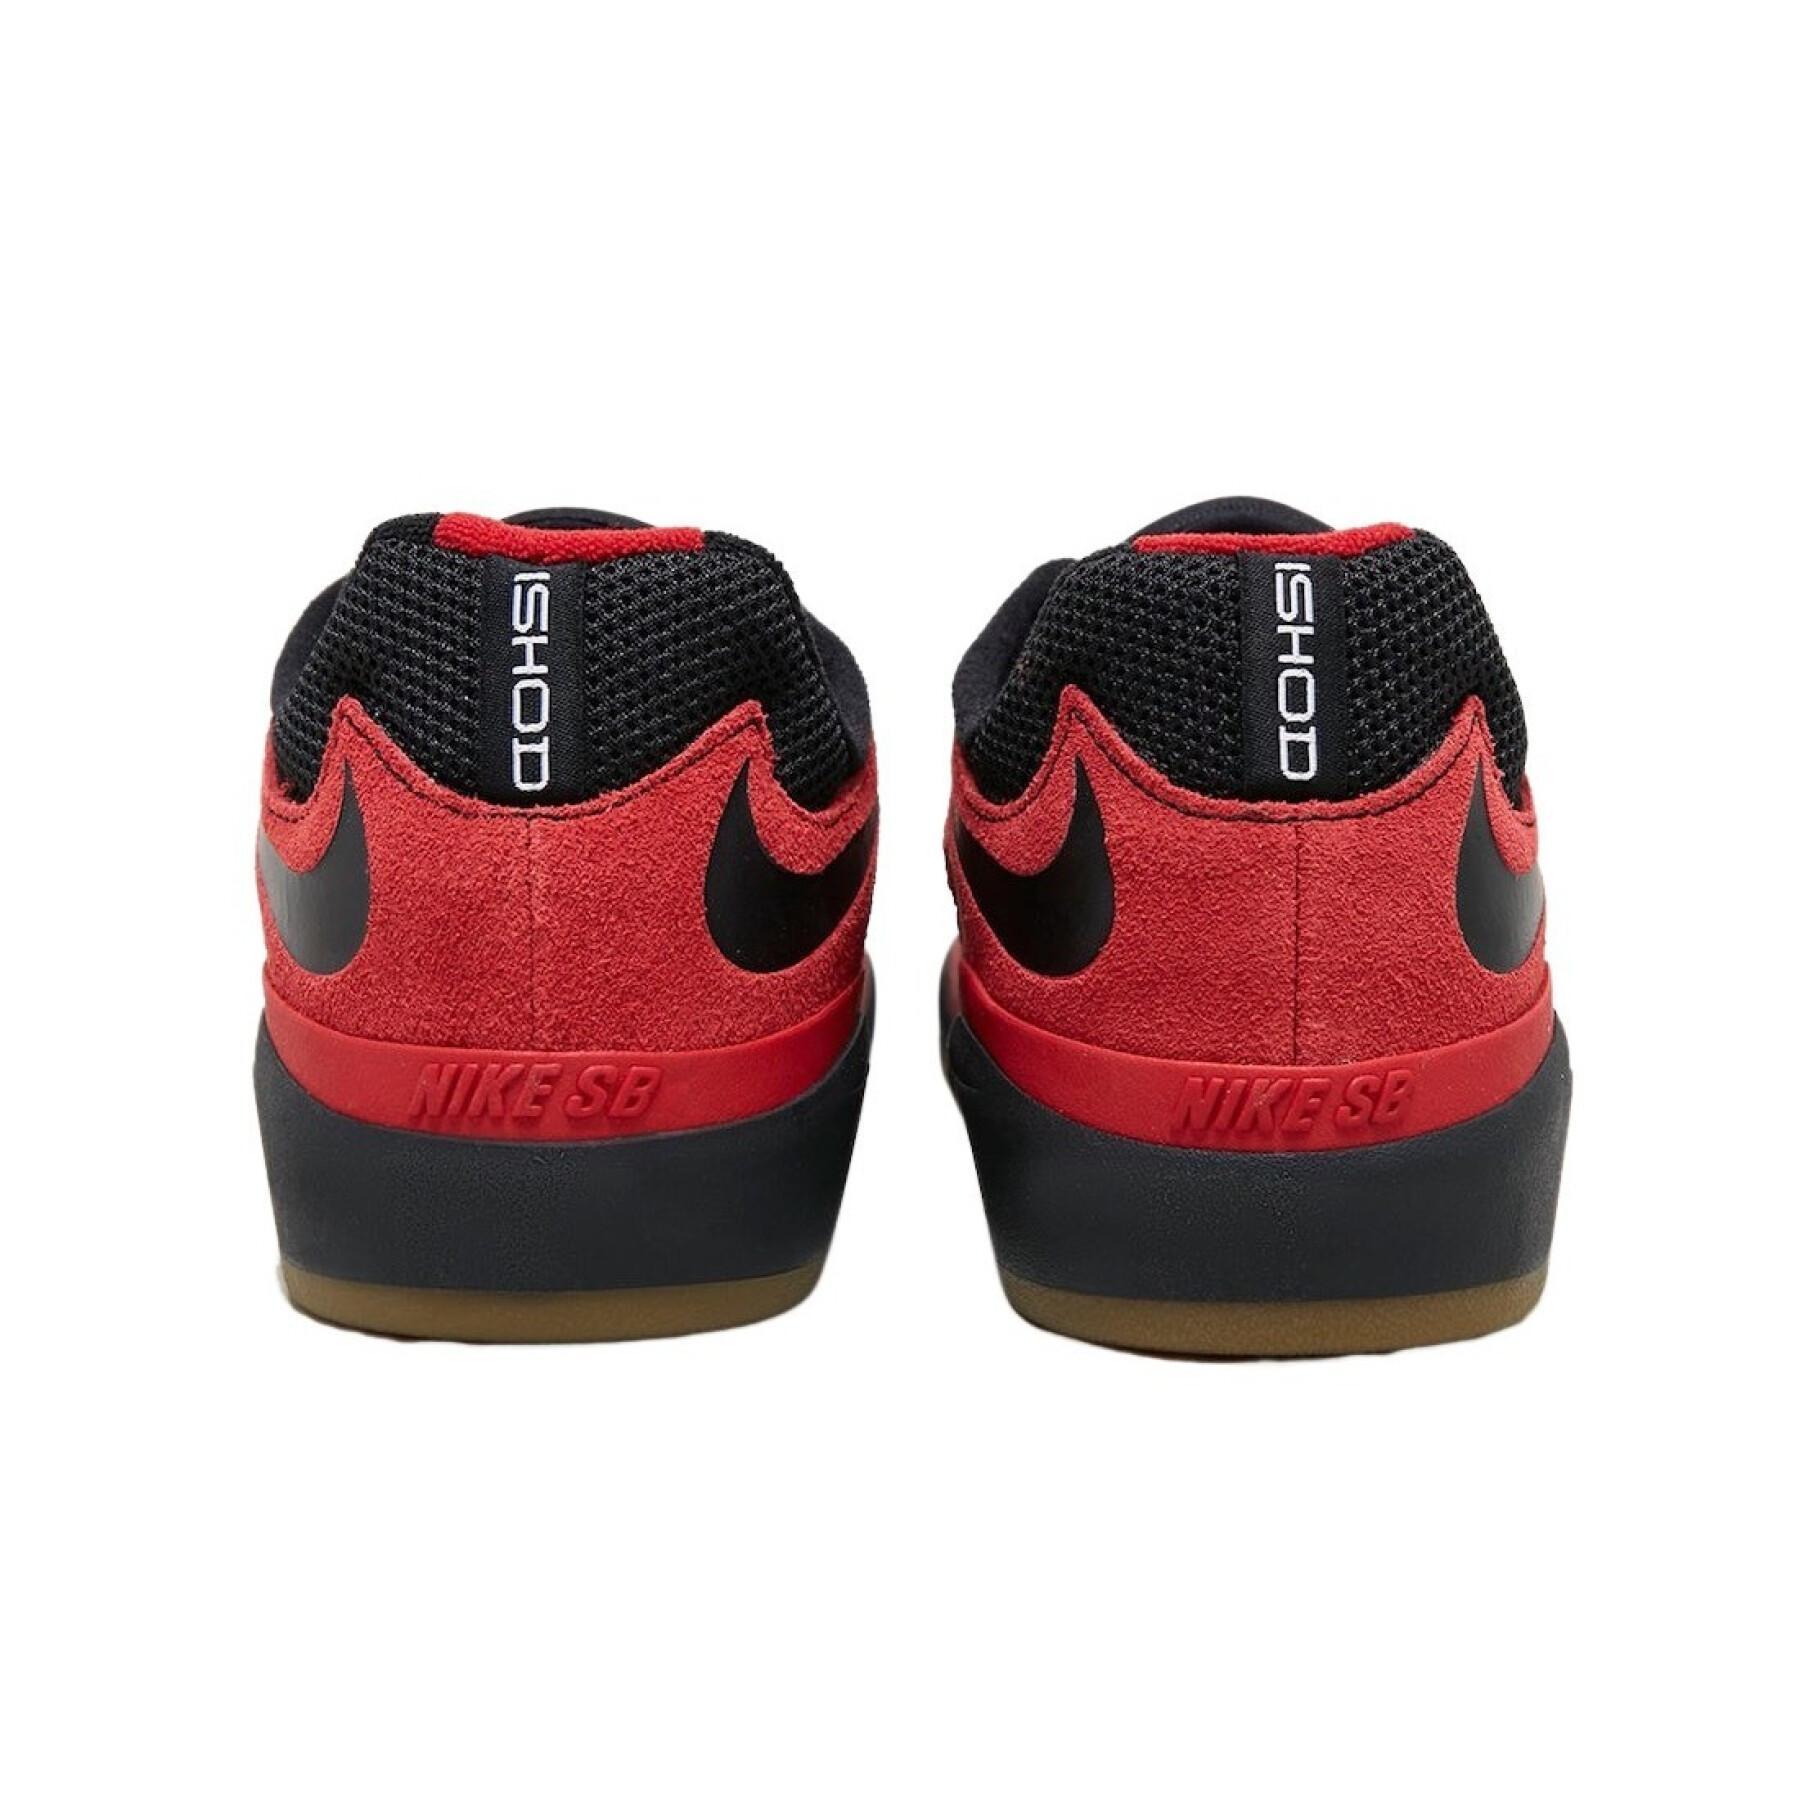 Chaussures Nike SB Ishod Wair